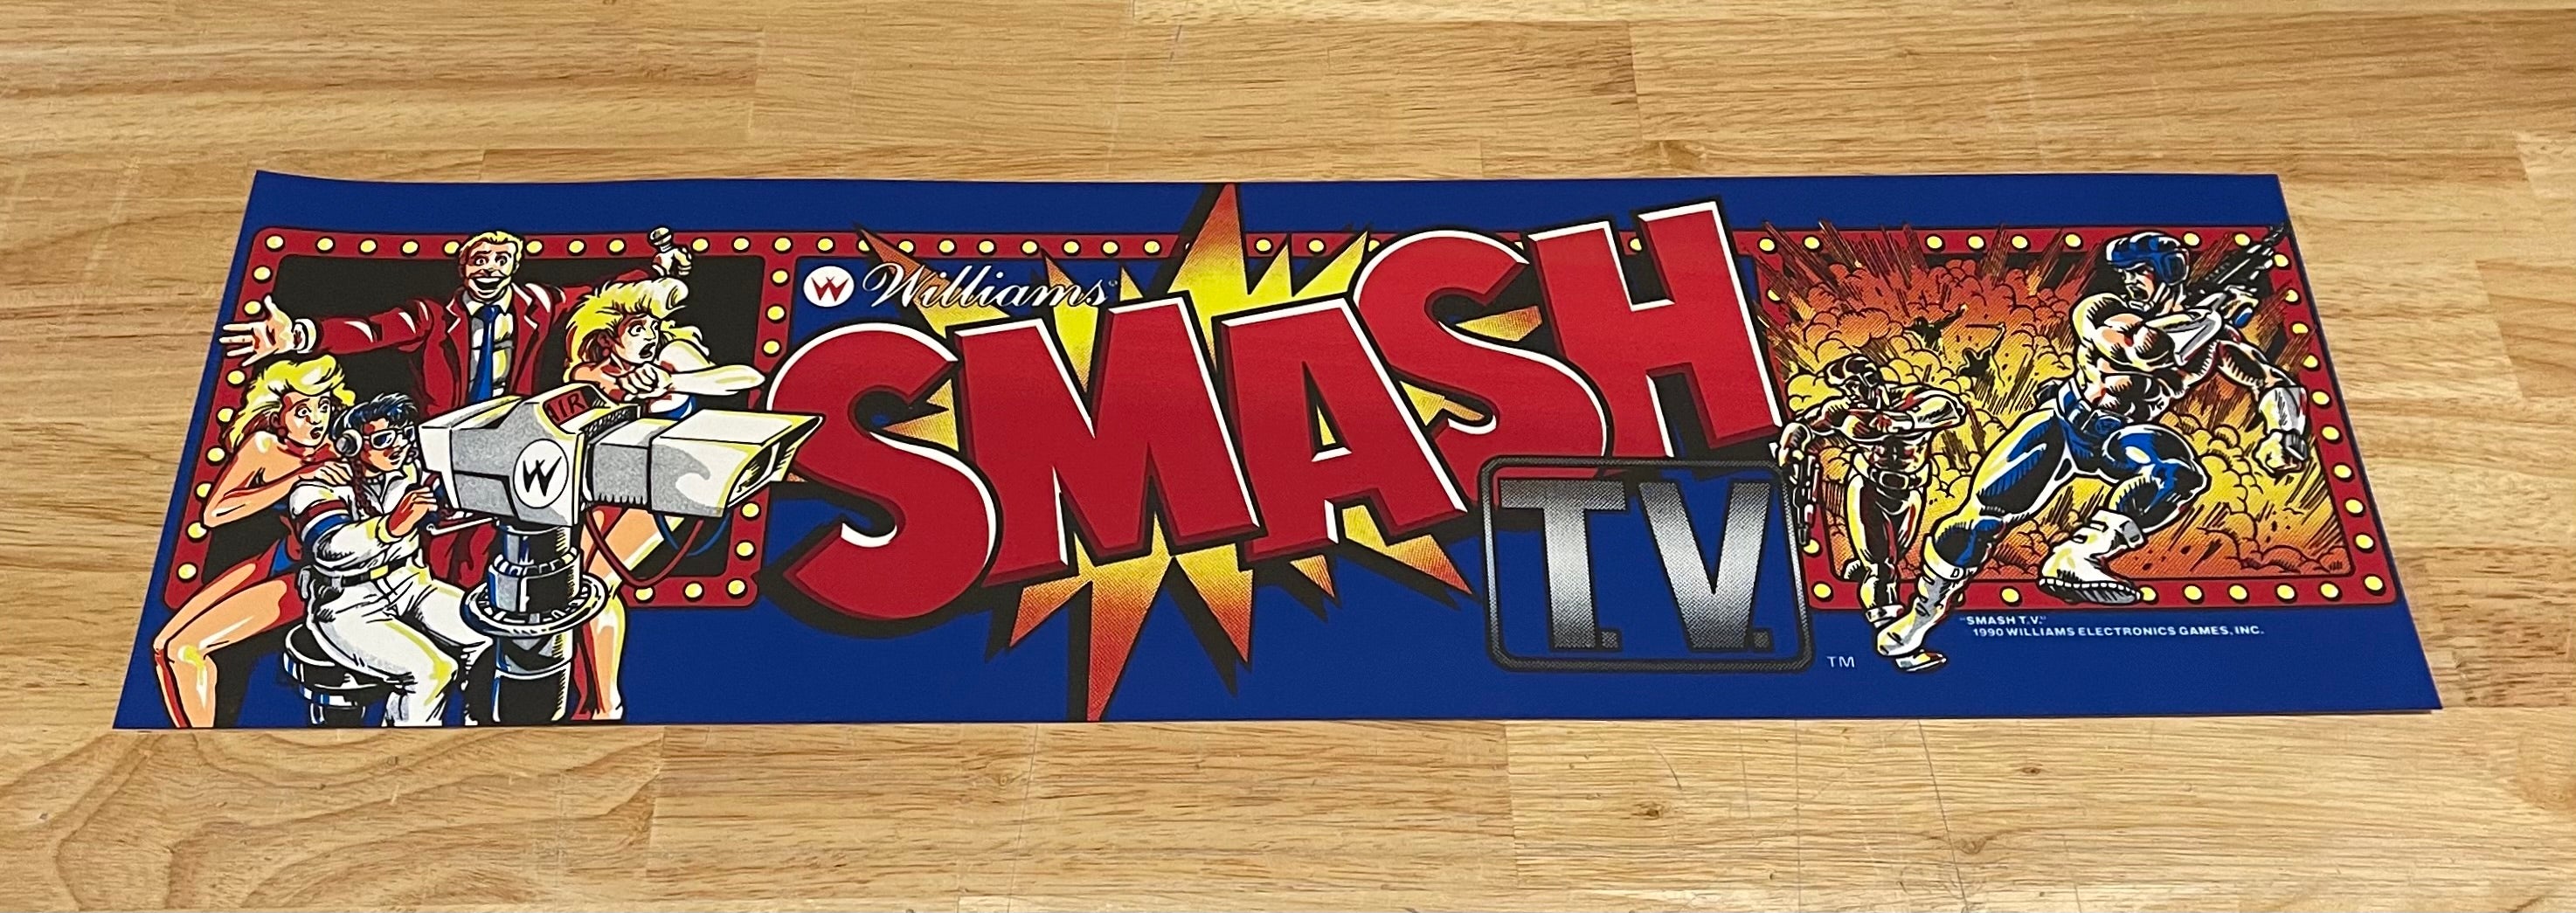 Chapiteau TV Smash